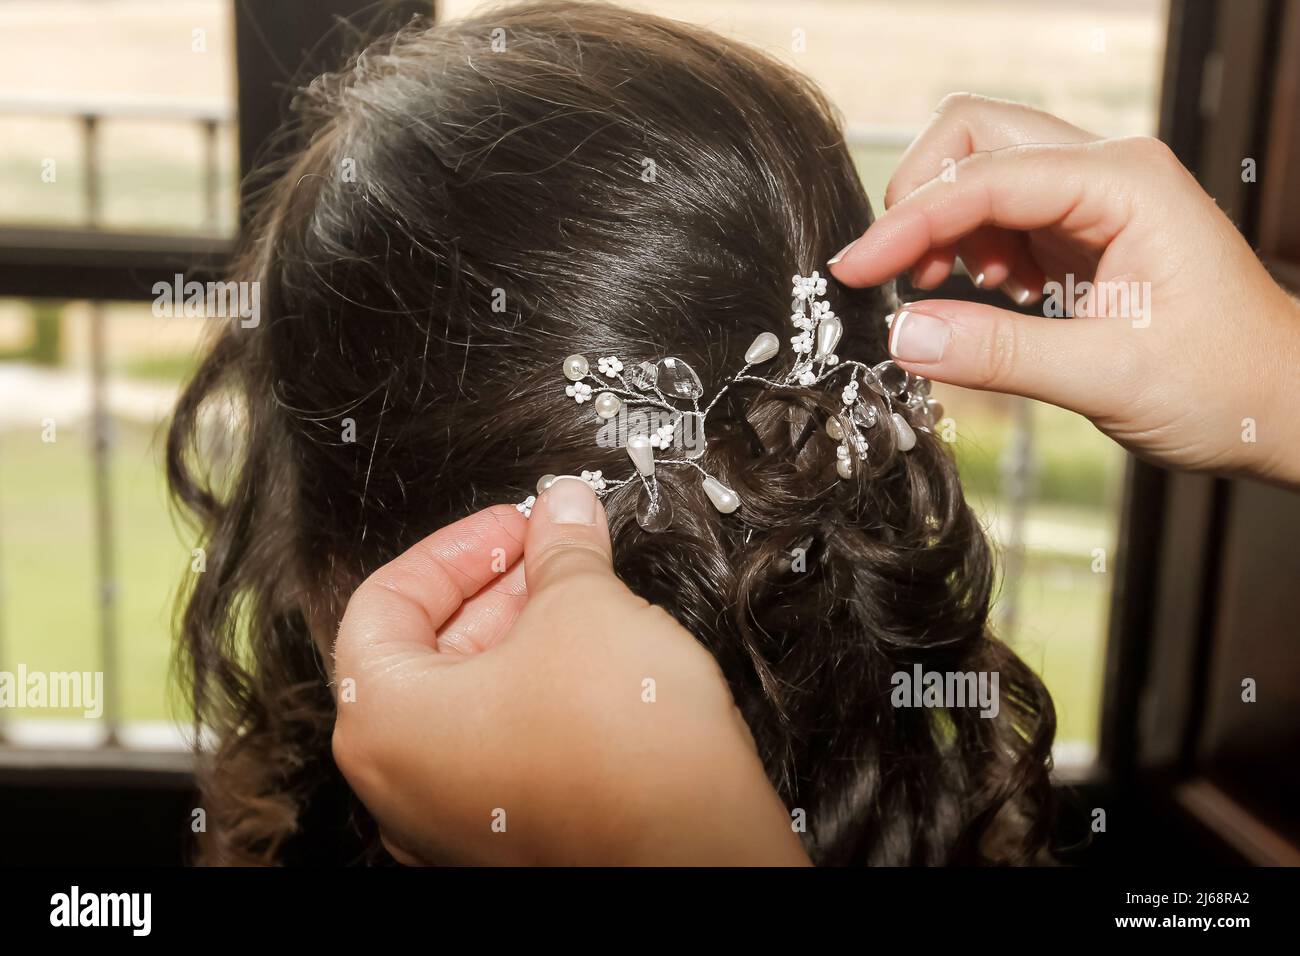 Bel ornement de cheveux qui est placé sur la tête d'une femme avec des cheveux foncés. Banque D'Images